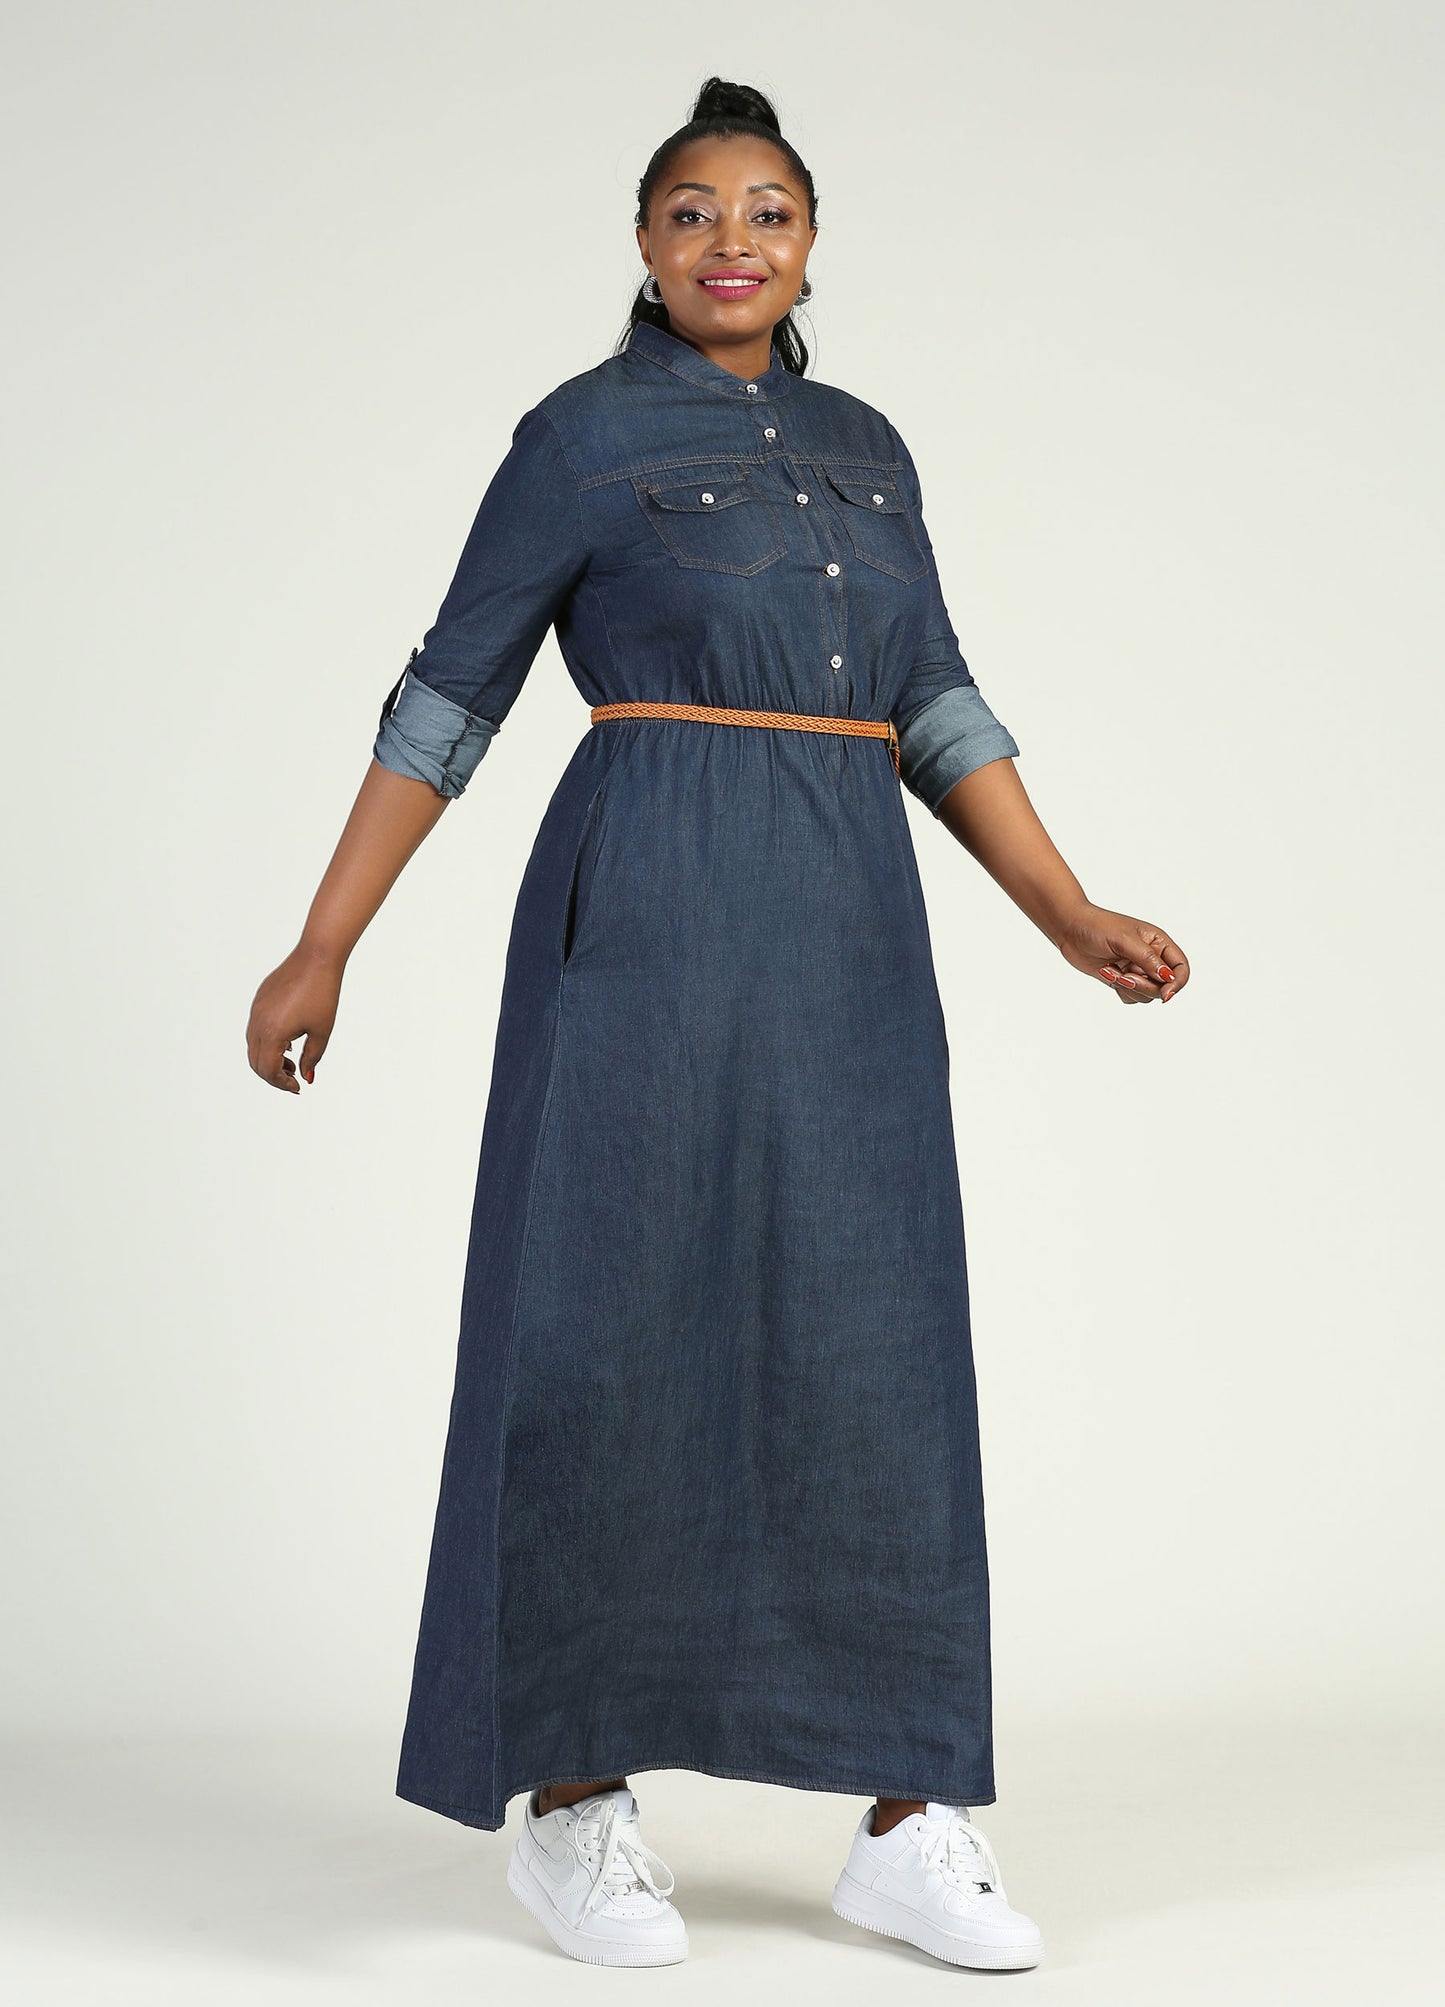 MECALA Women's Long Sleeve Denim Shirt Dress-Dark Blue